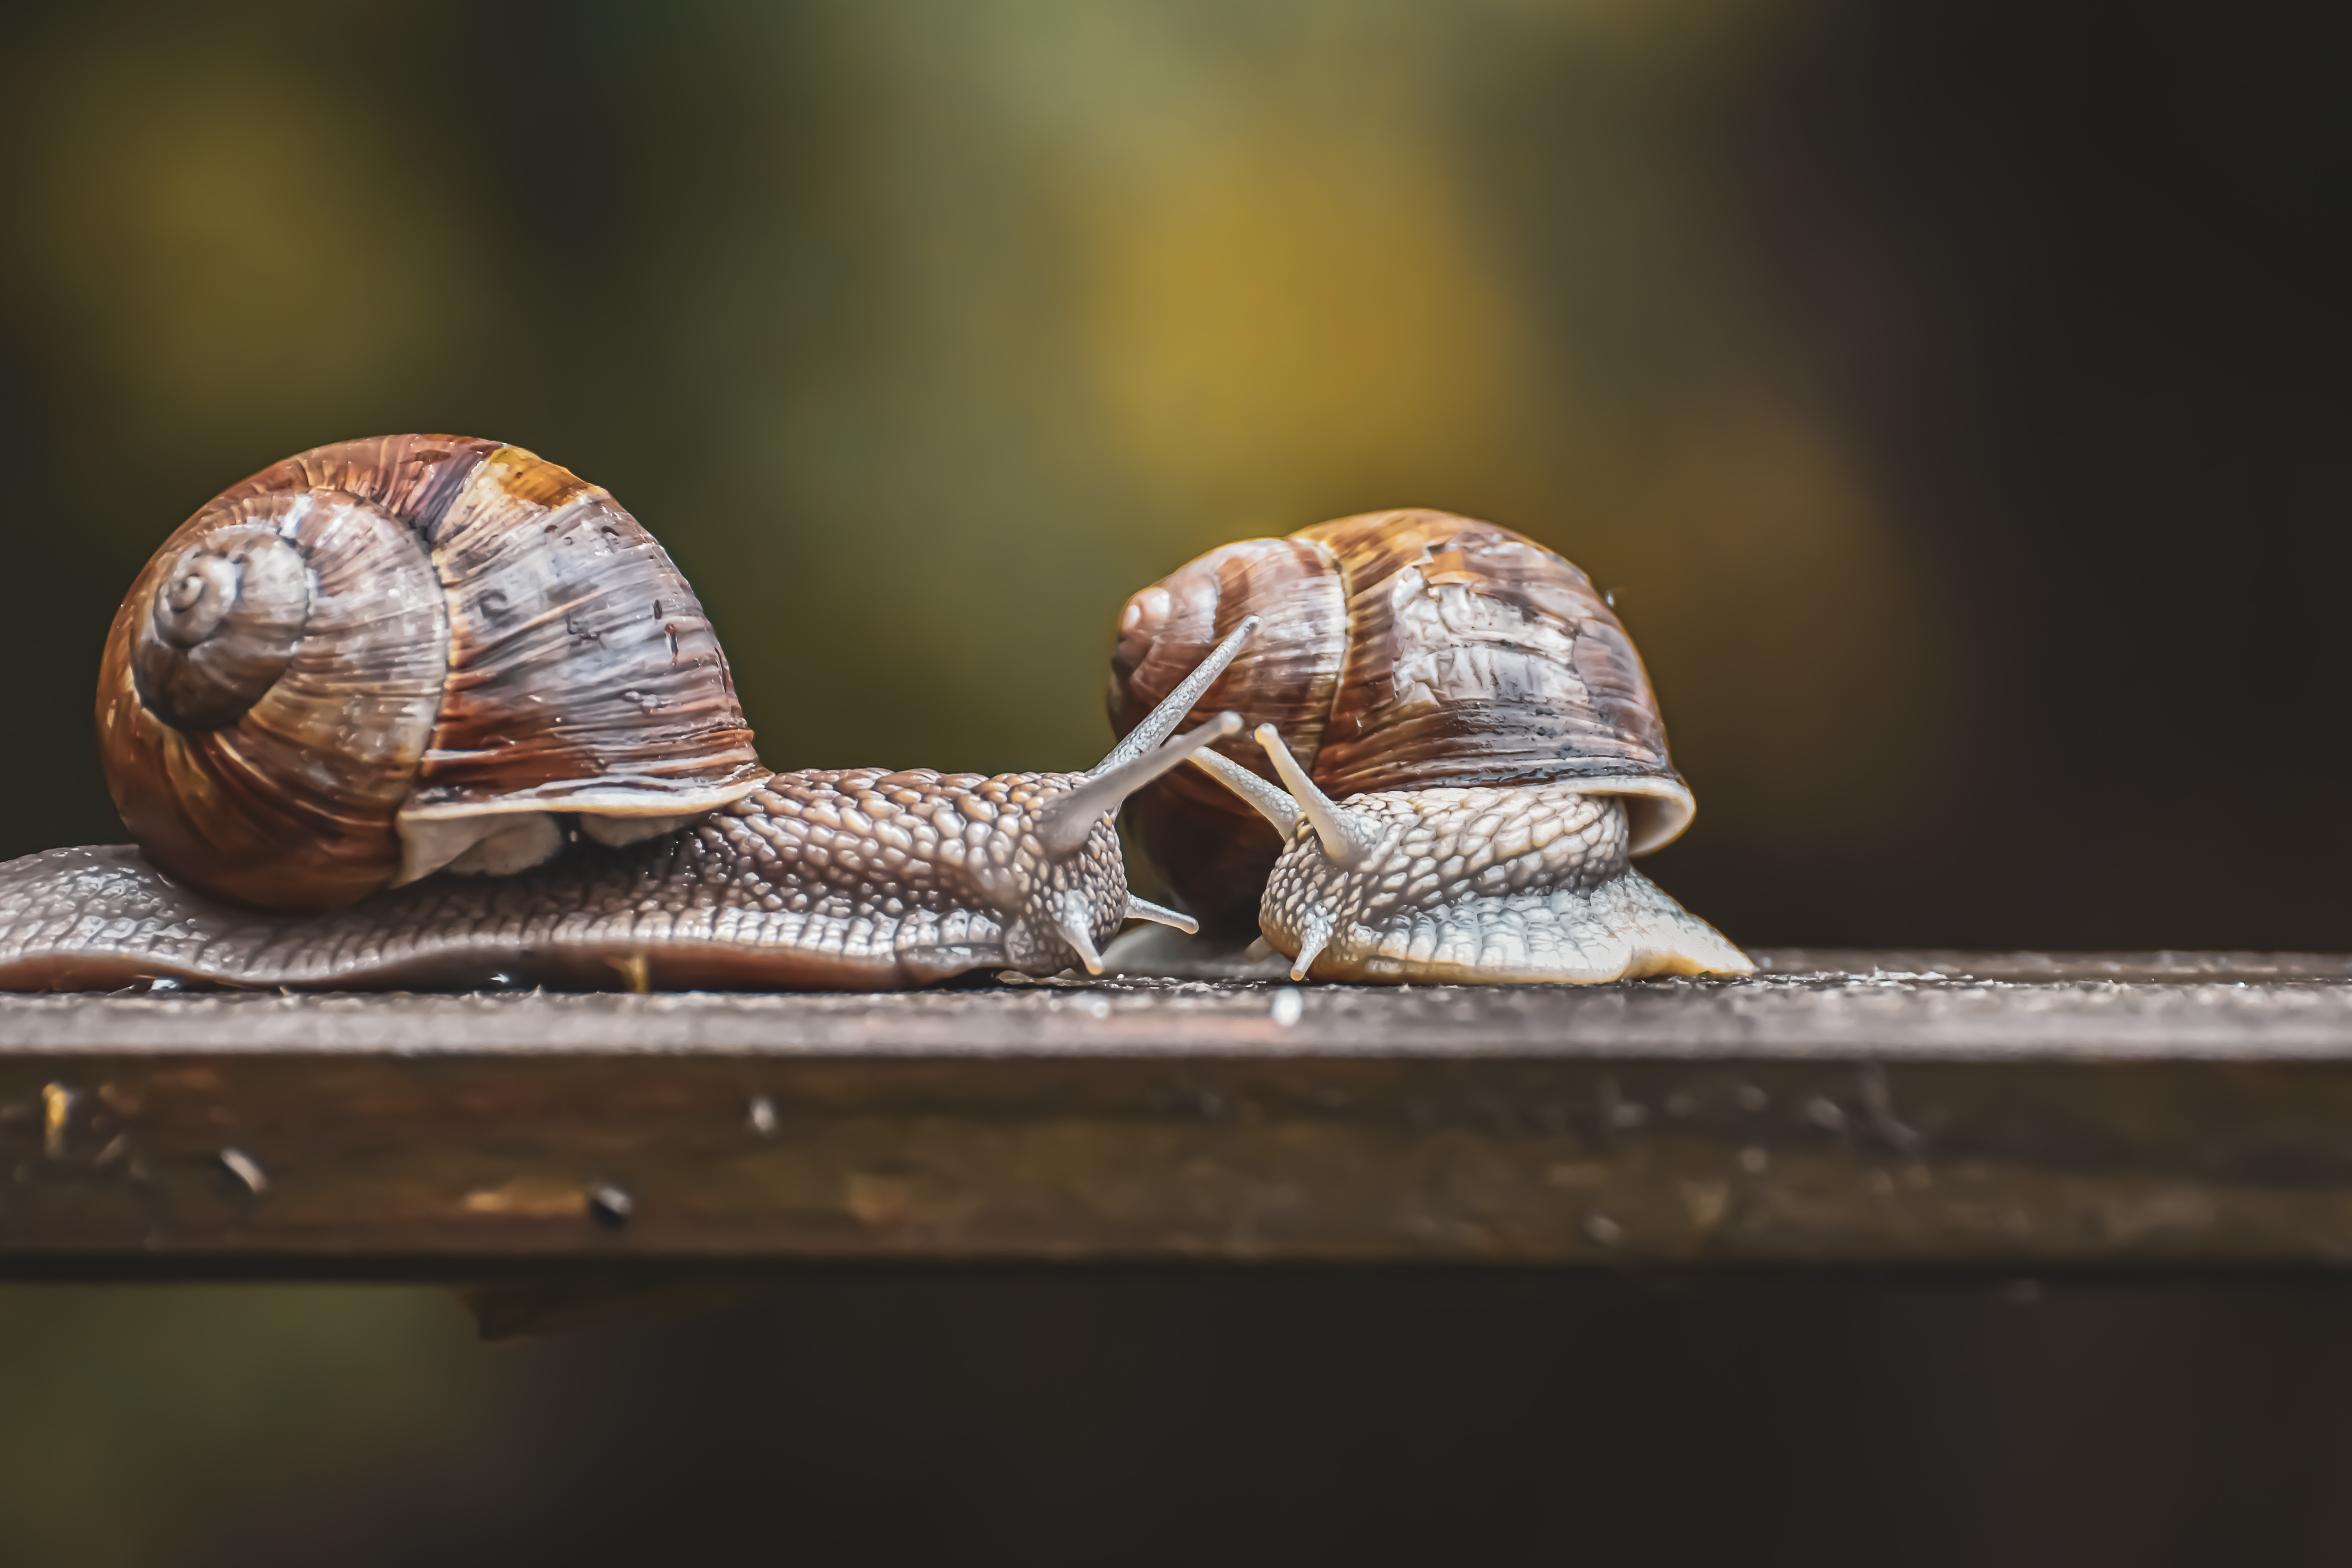 고동색 발판 위에 달팽이 2마리가 서로 마주보며 있는 것을 확대해 놓은 사진